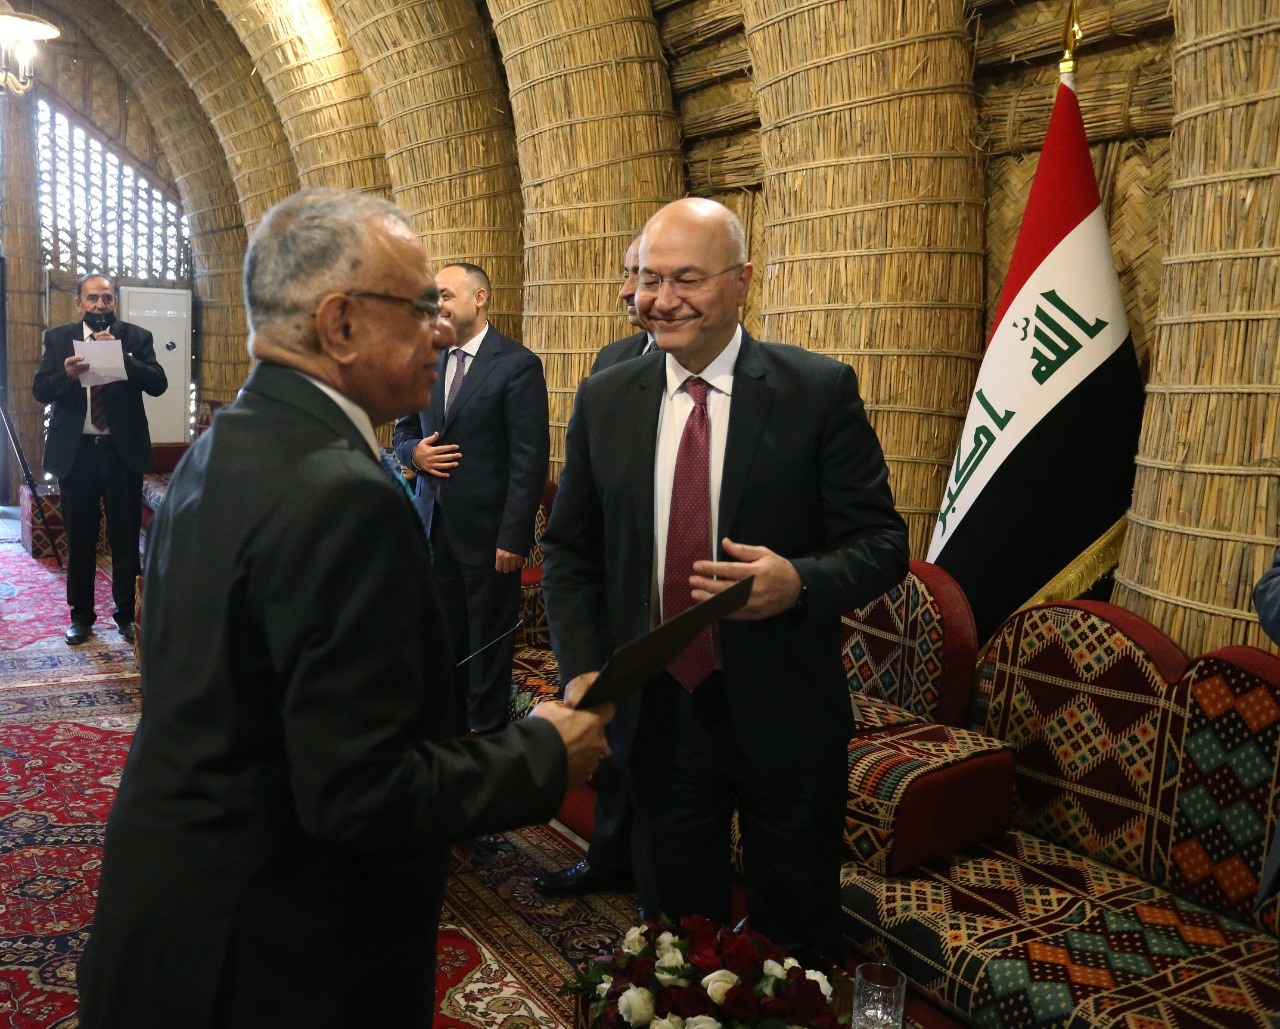 برهم صالح يلتقط 23 صورة فوتغرافية مع اعلاميين بمضيف من القصب بقصر صدام